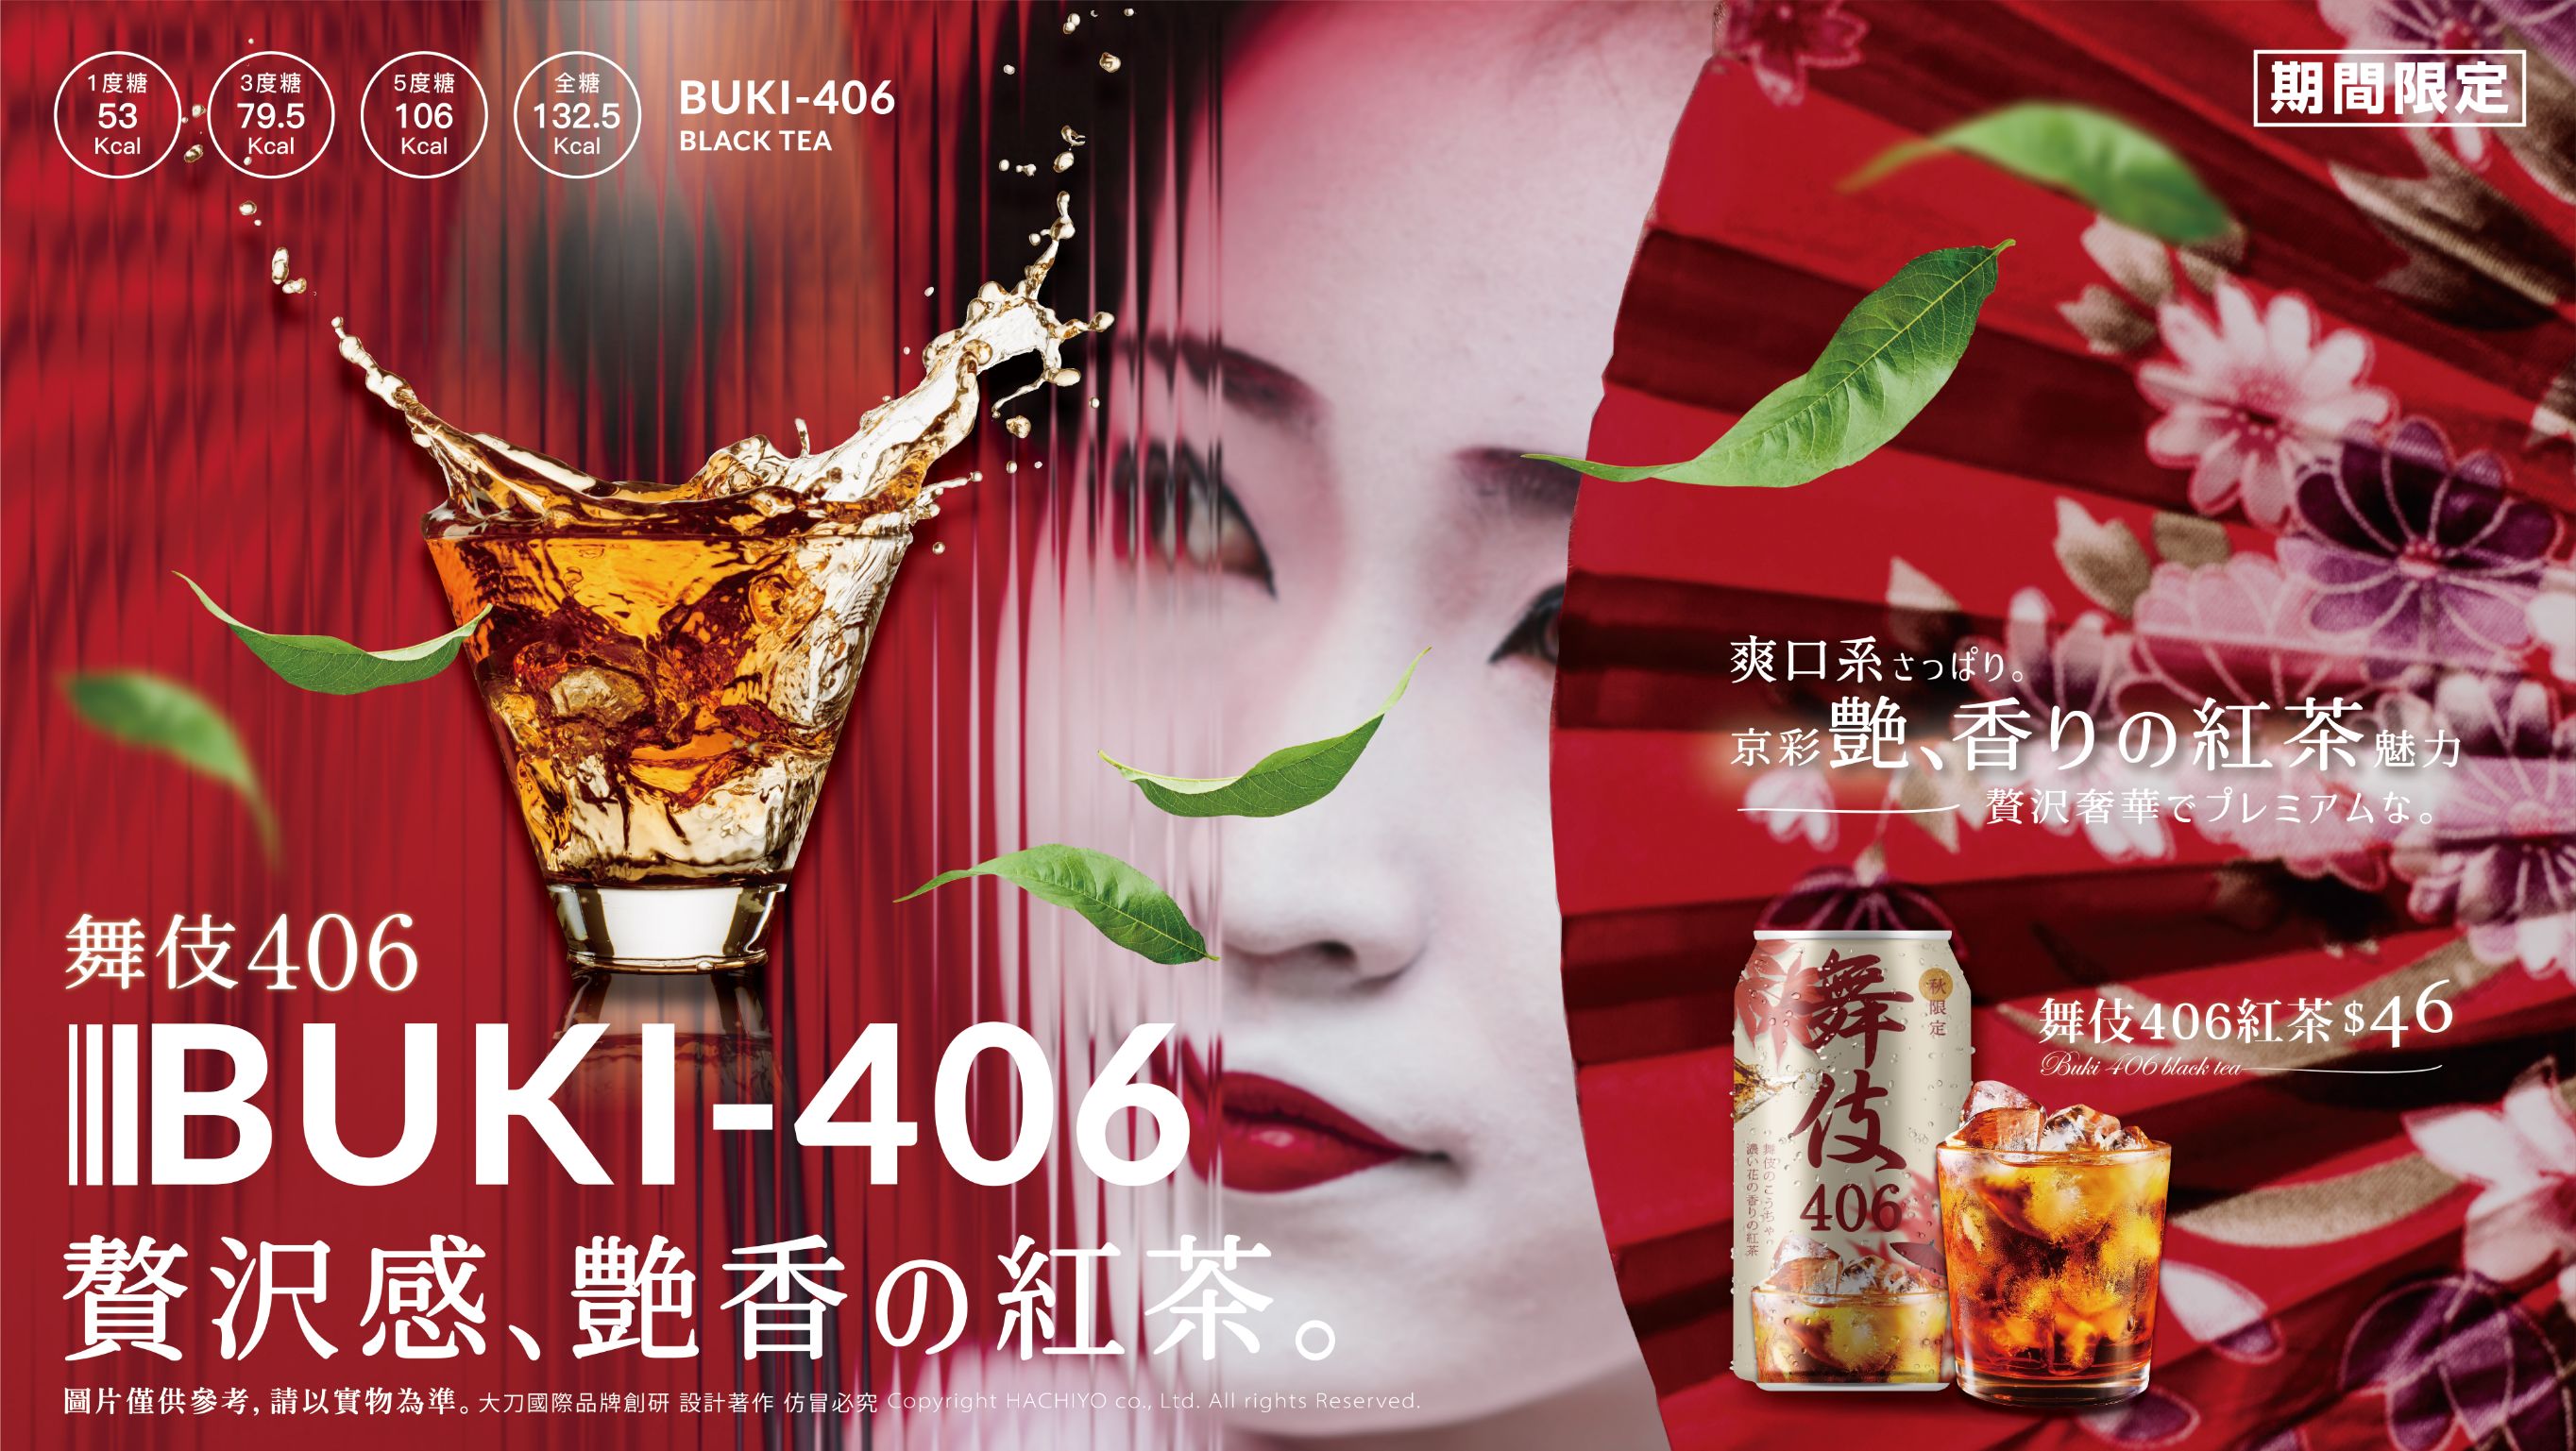 舞伎406紅茶、舞伎紅茶、發酵工藝、奶香